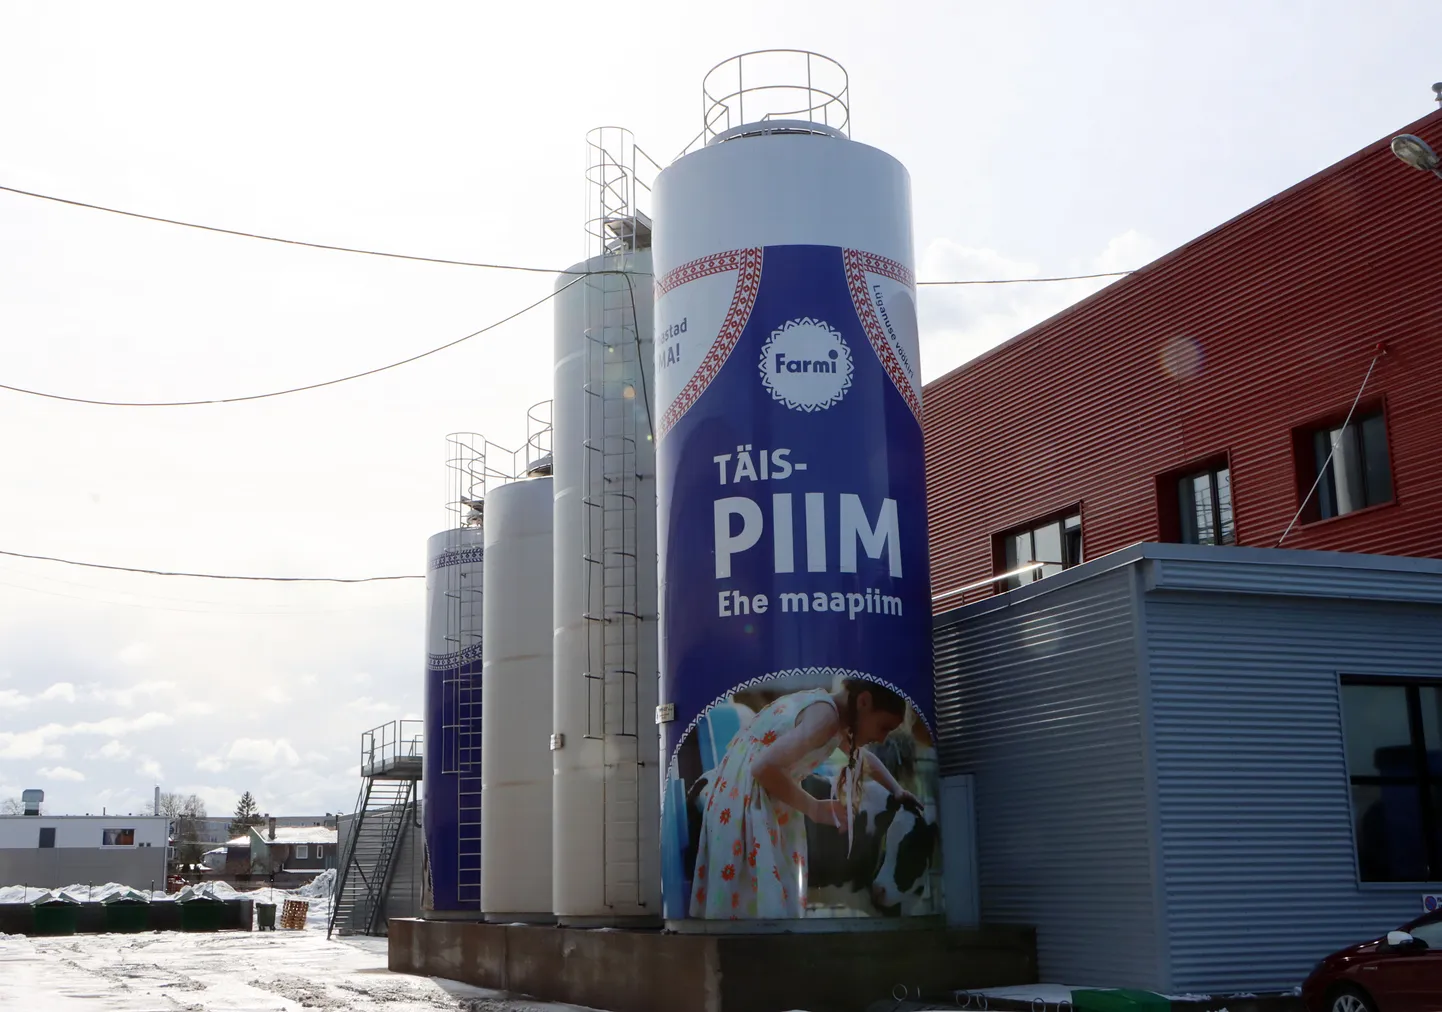 Молочное производство "Farmi" в Йыхви.